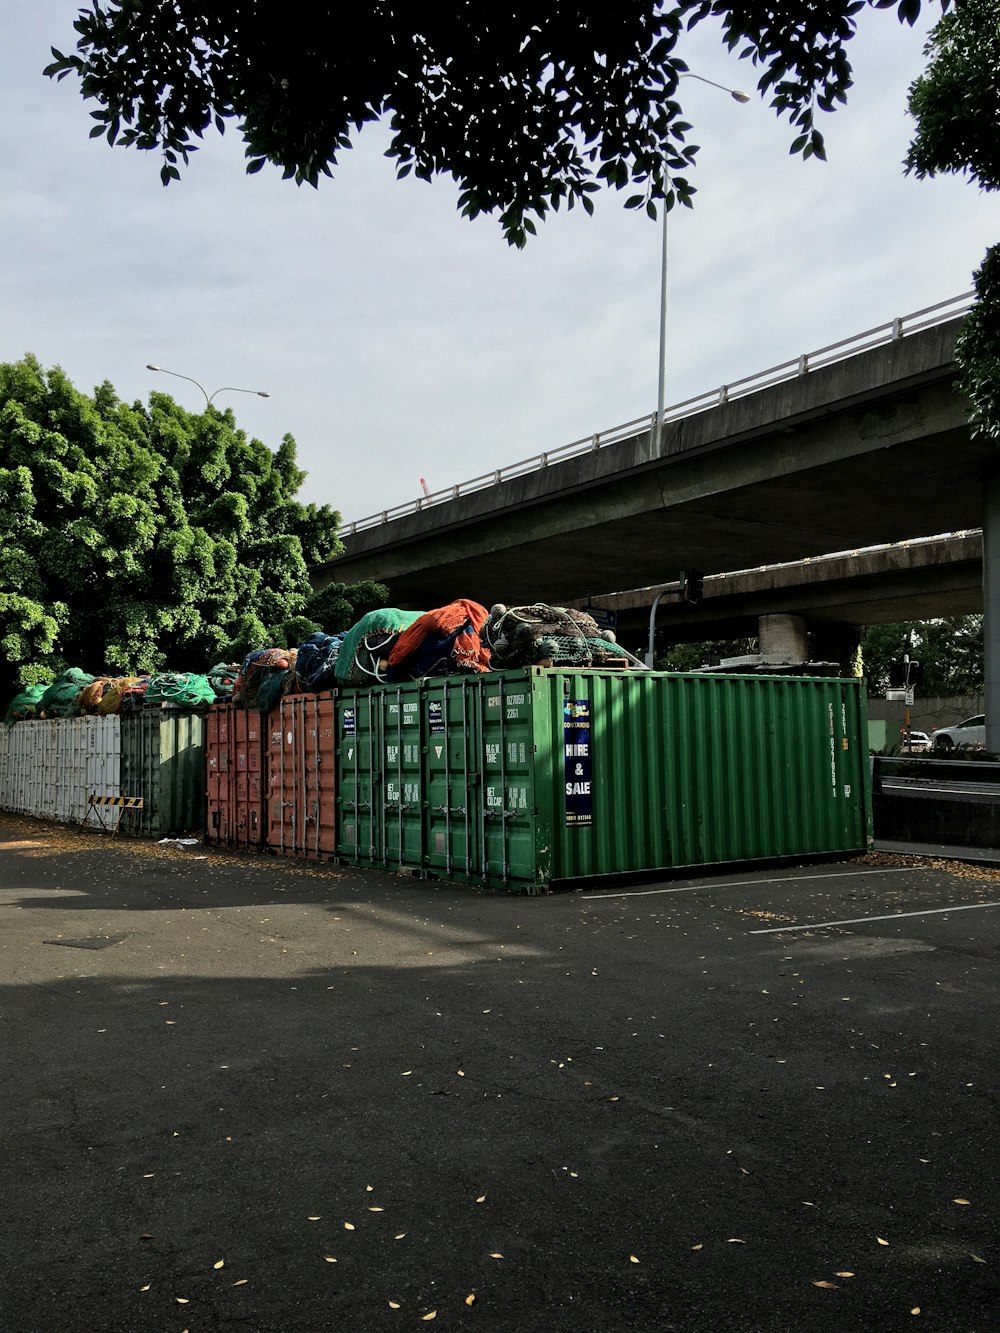 Grüne Mülleimer auf dem Bürgersteig tagsüber